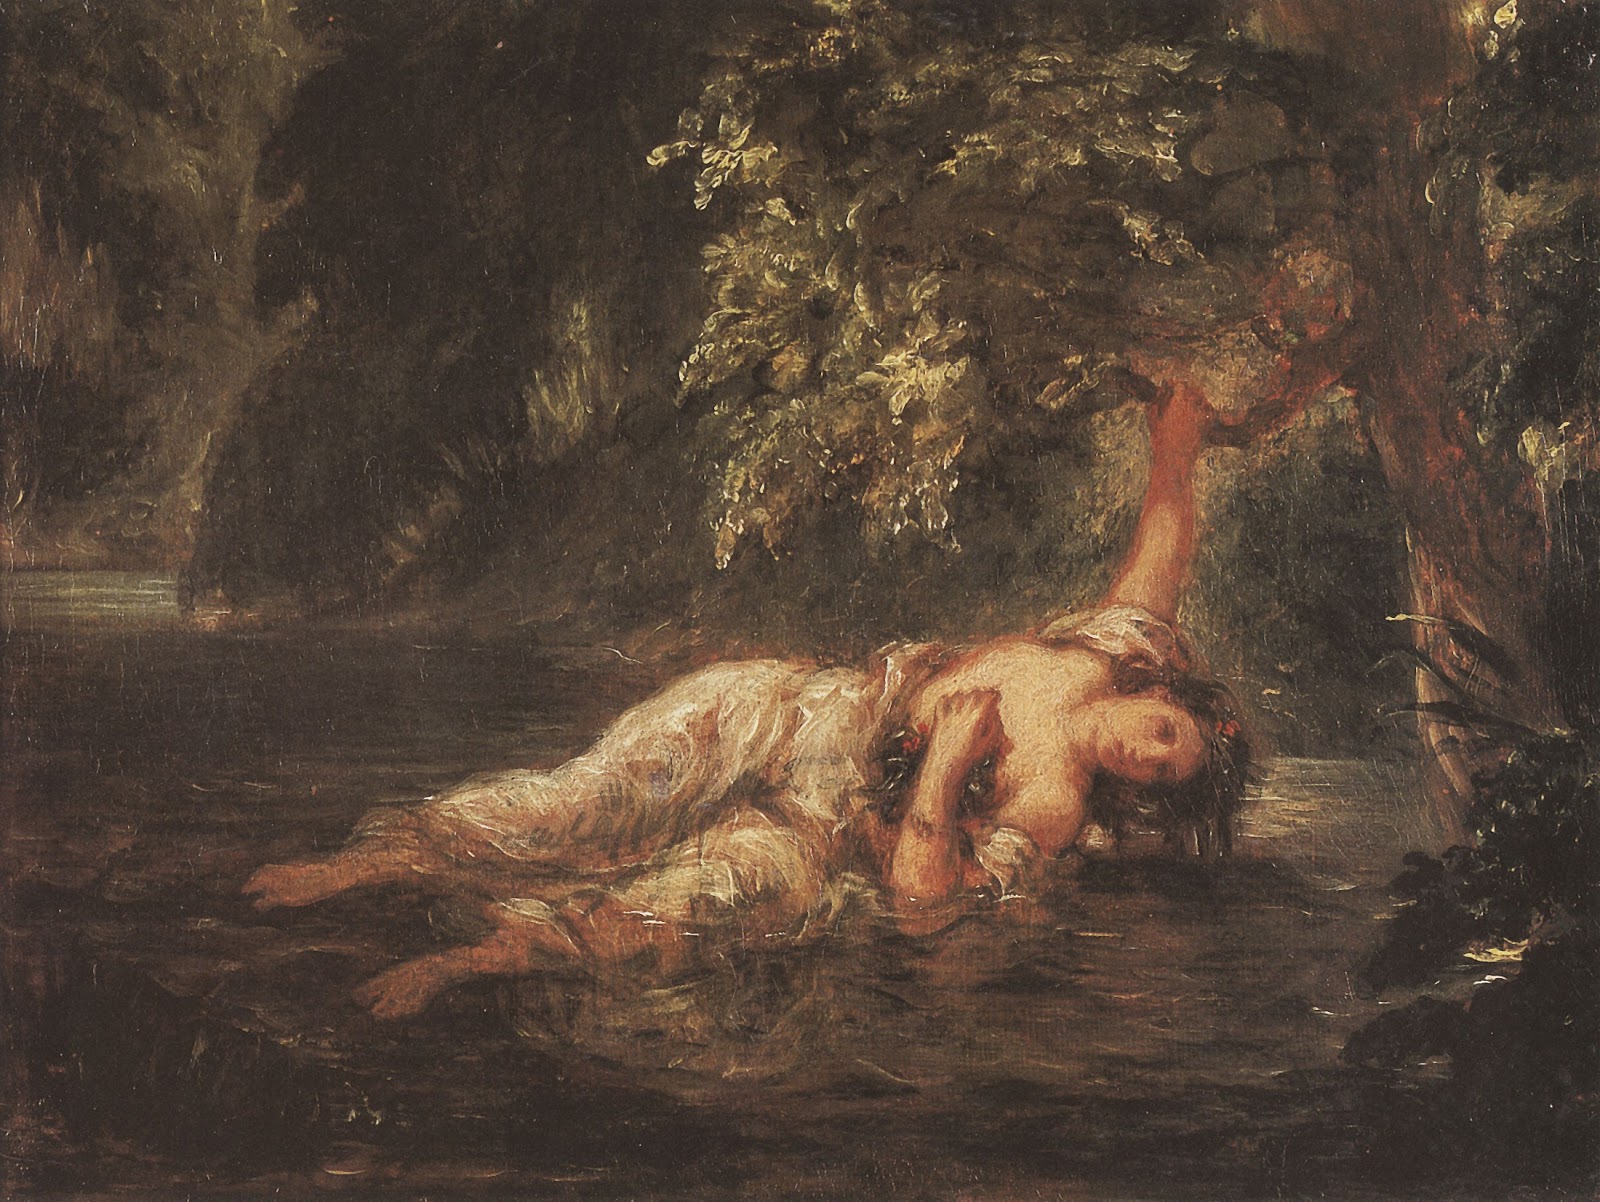 Eugene+Delacroix-1798-1863 (214).jpg